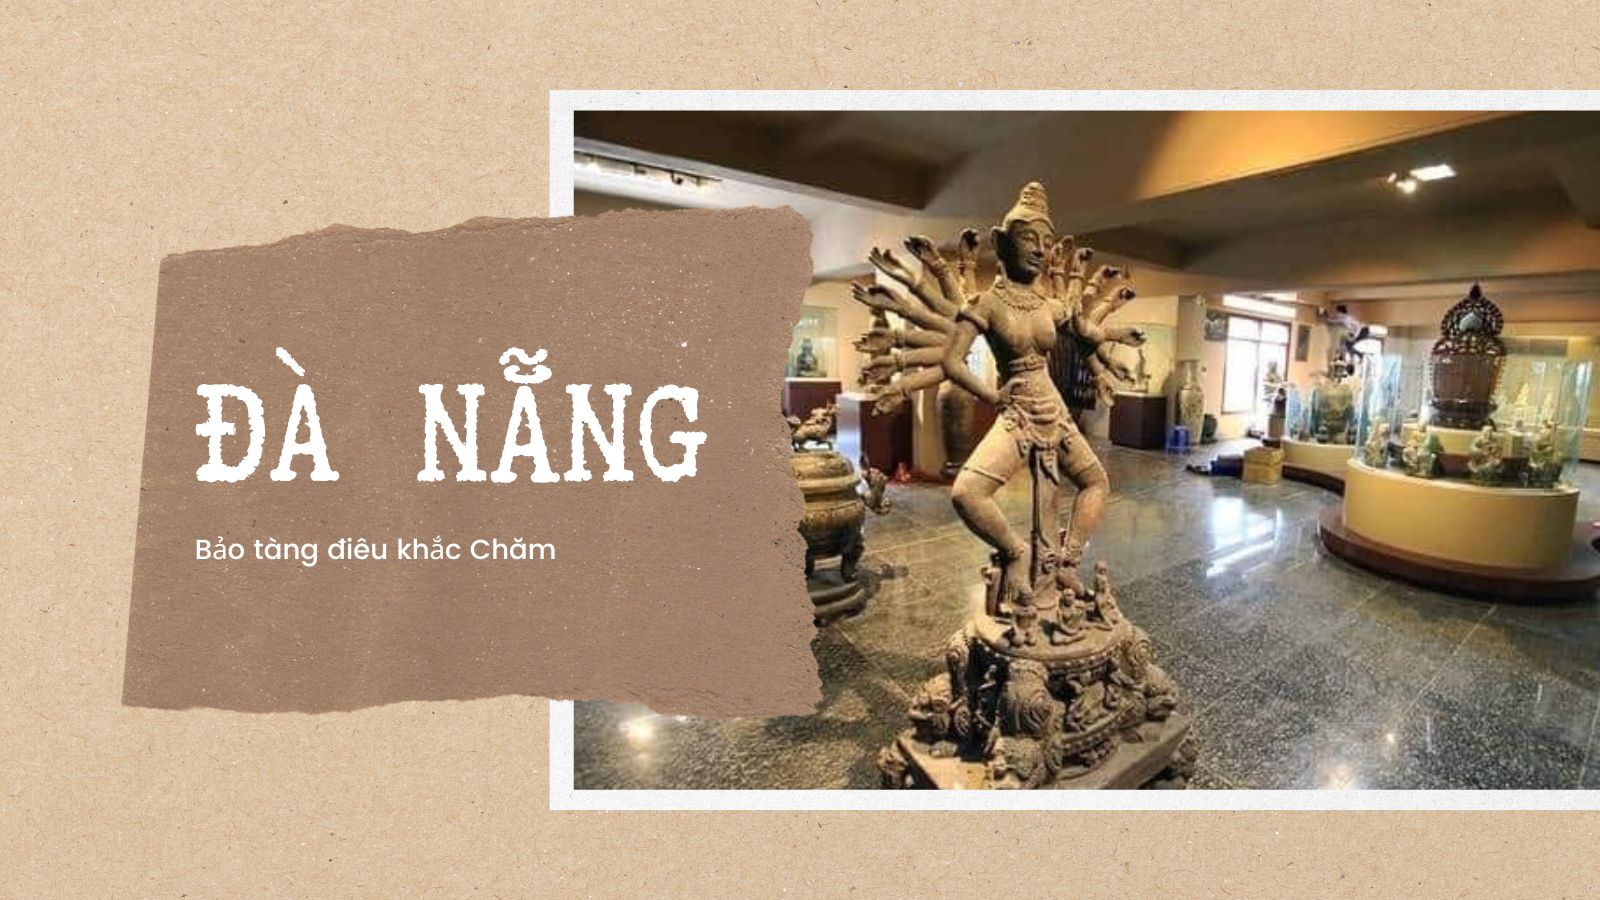 Bảo tàng điêu khắc Chăm - Du lịch Đà Nẵng thu hút nhất